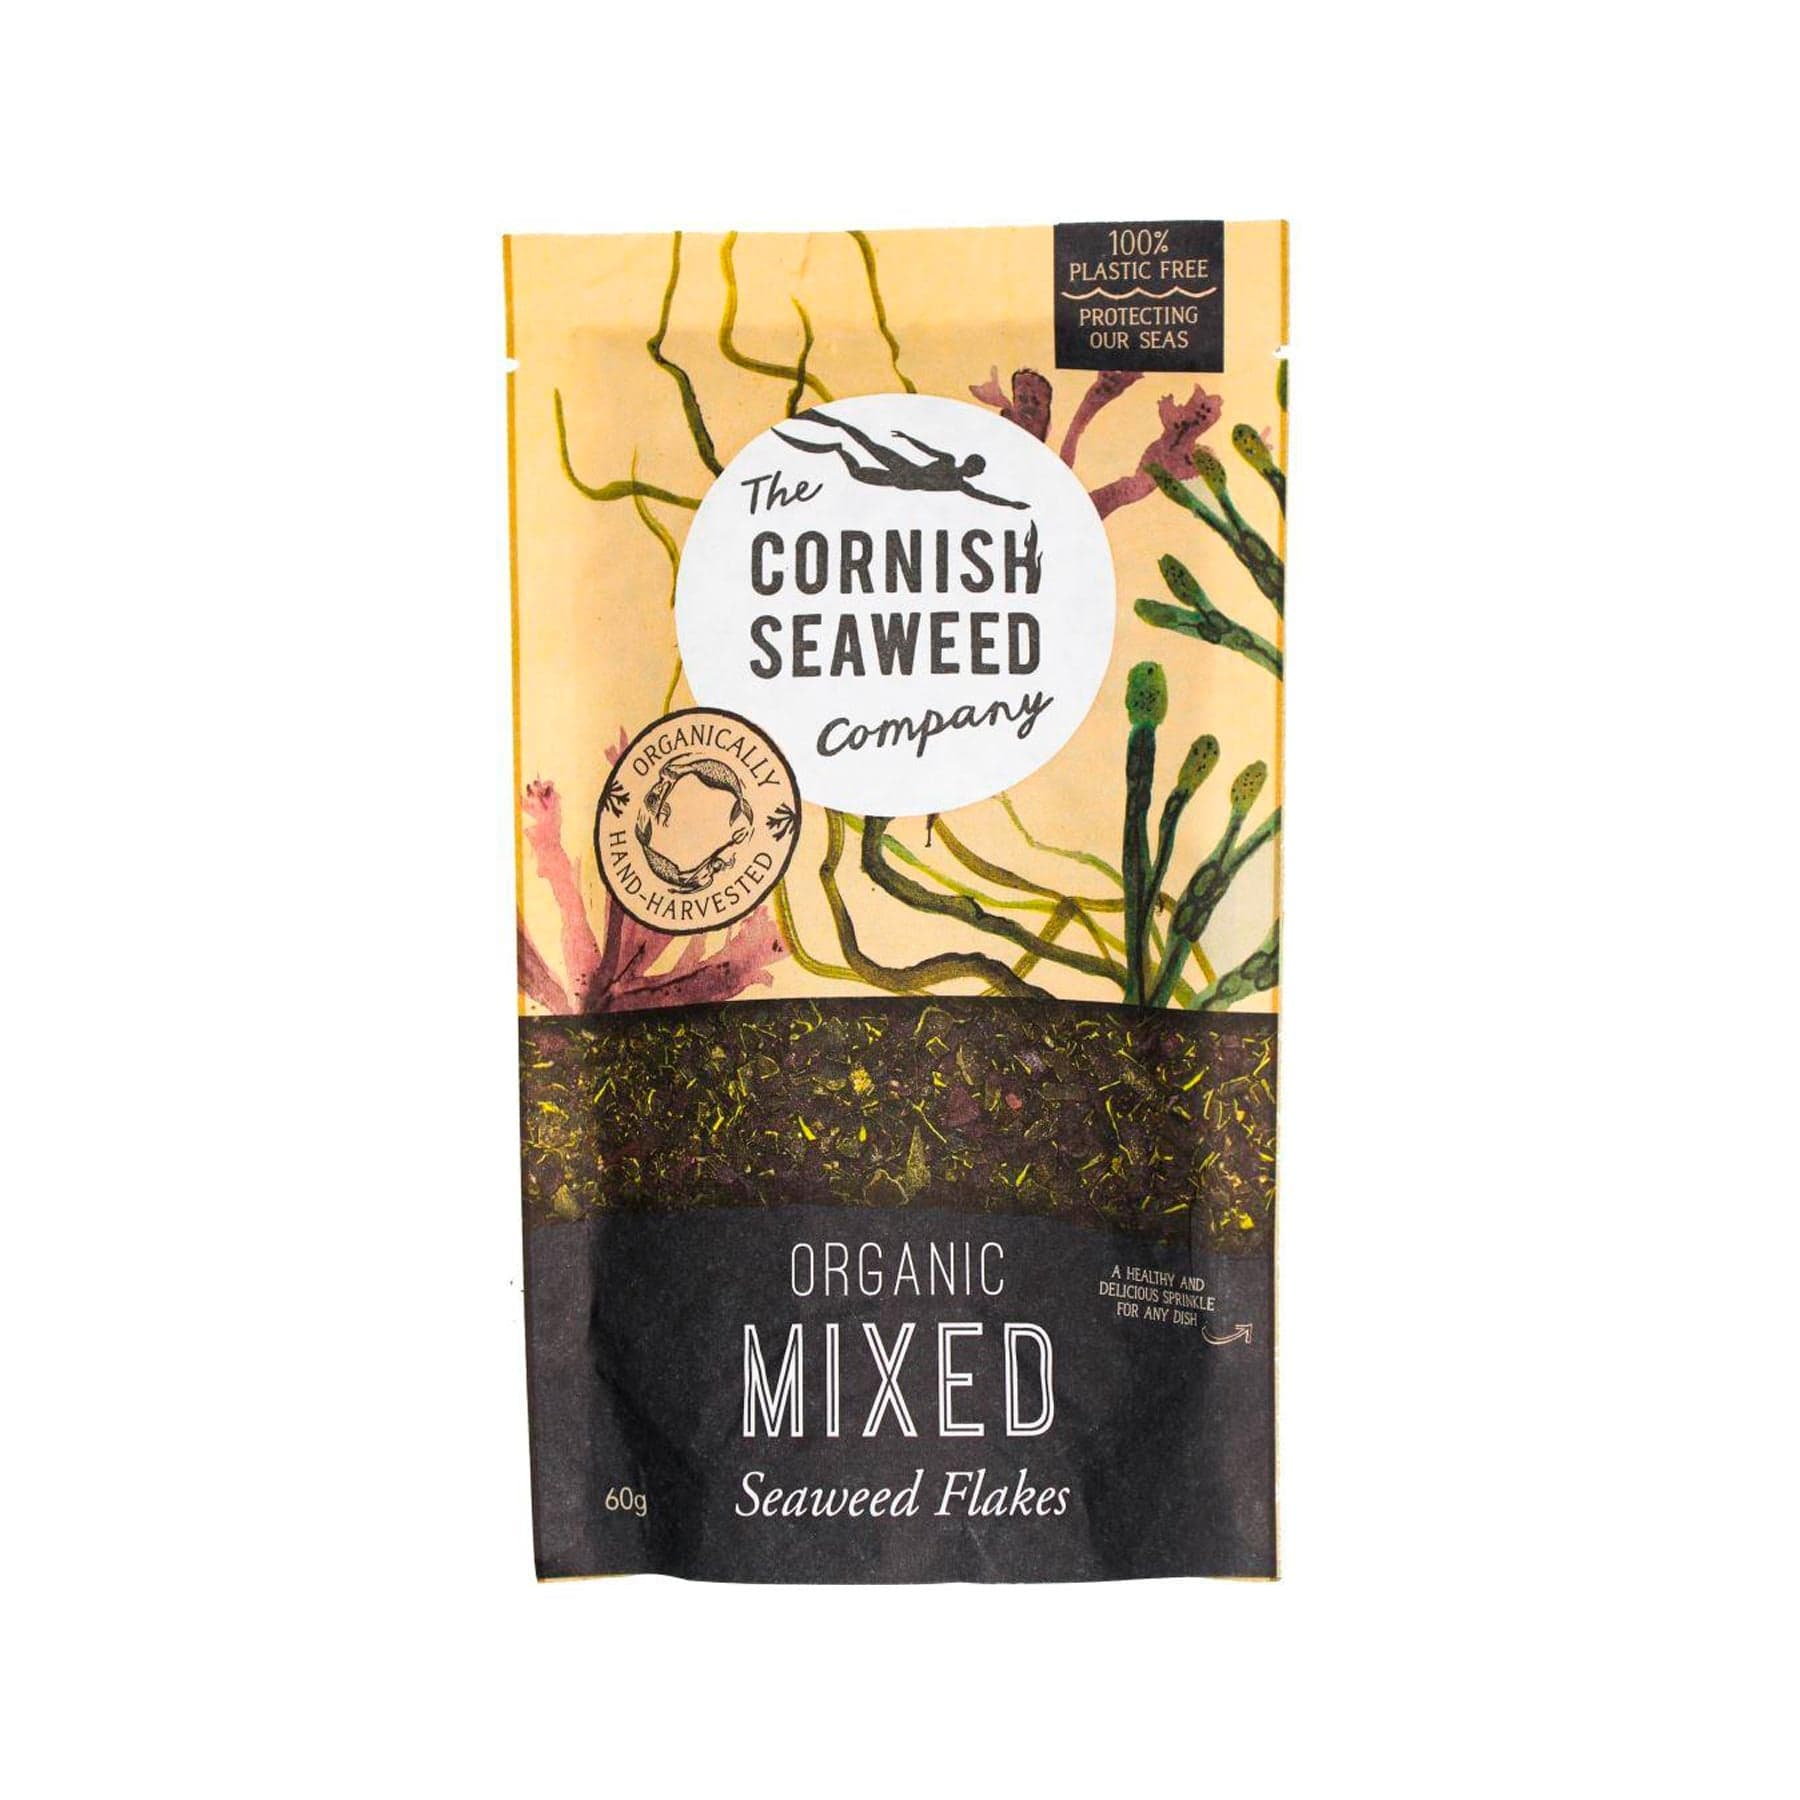 Organic mixed seaweed flakes 60g